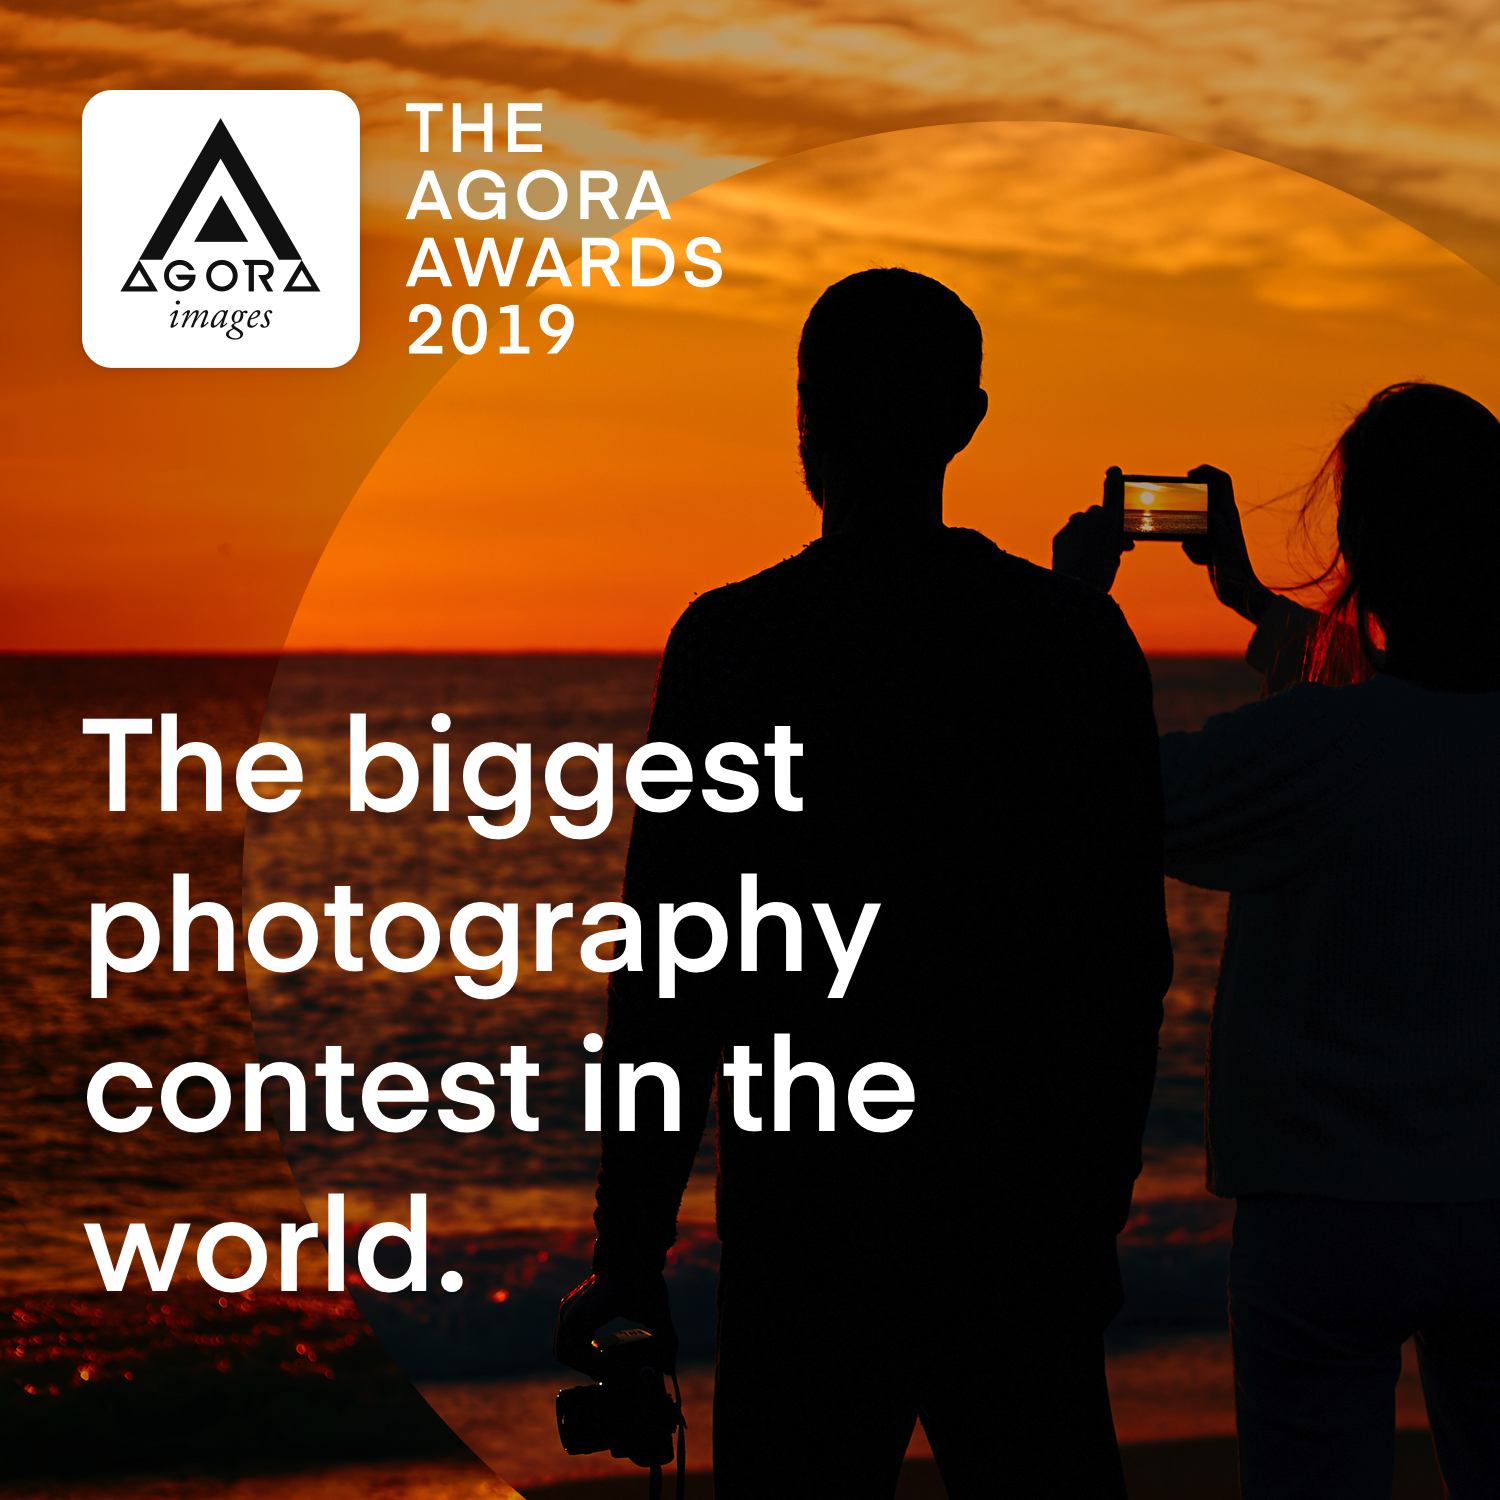 AGORA images organiza el concurso de fotografía con el mayor premio del mundo - Diario de Emprendedores